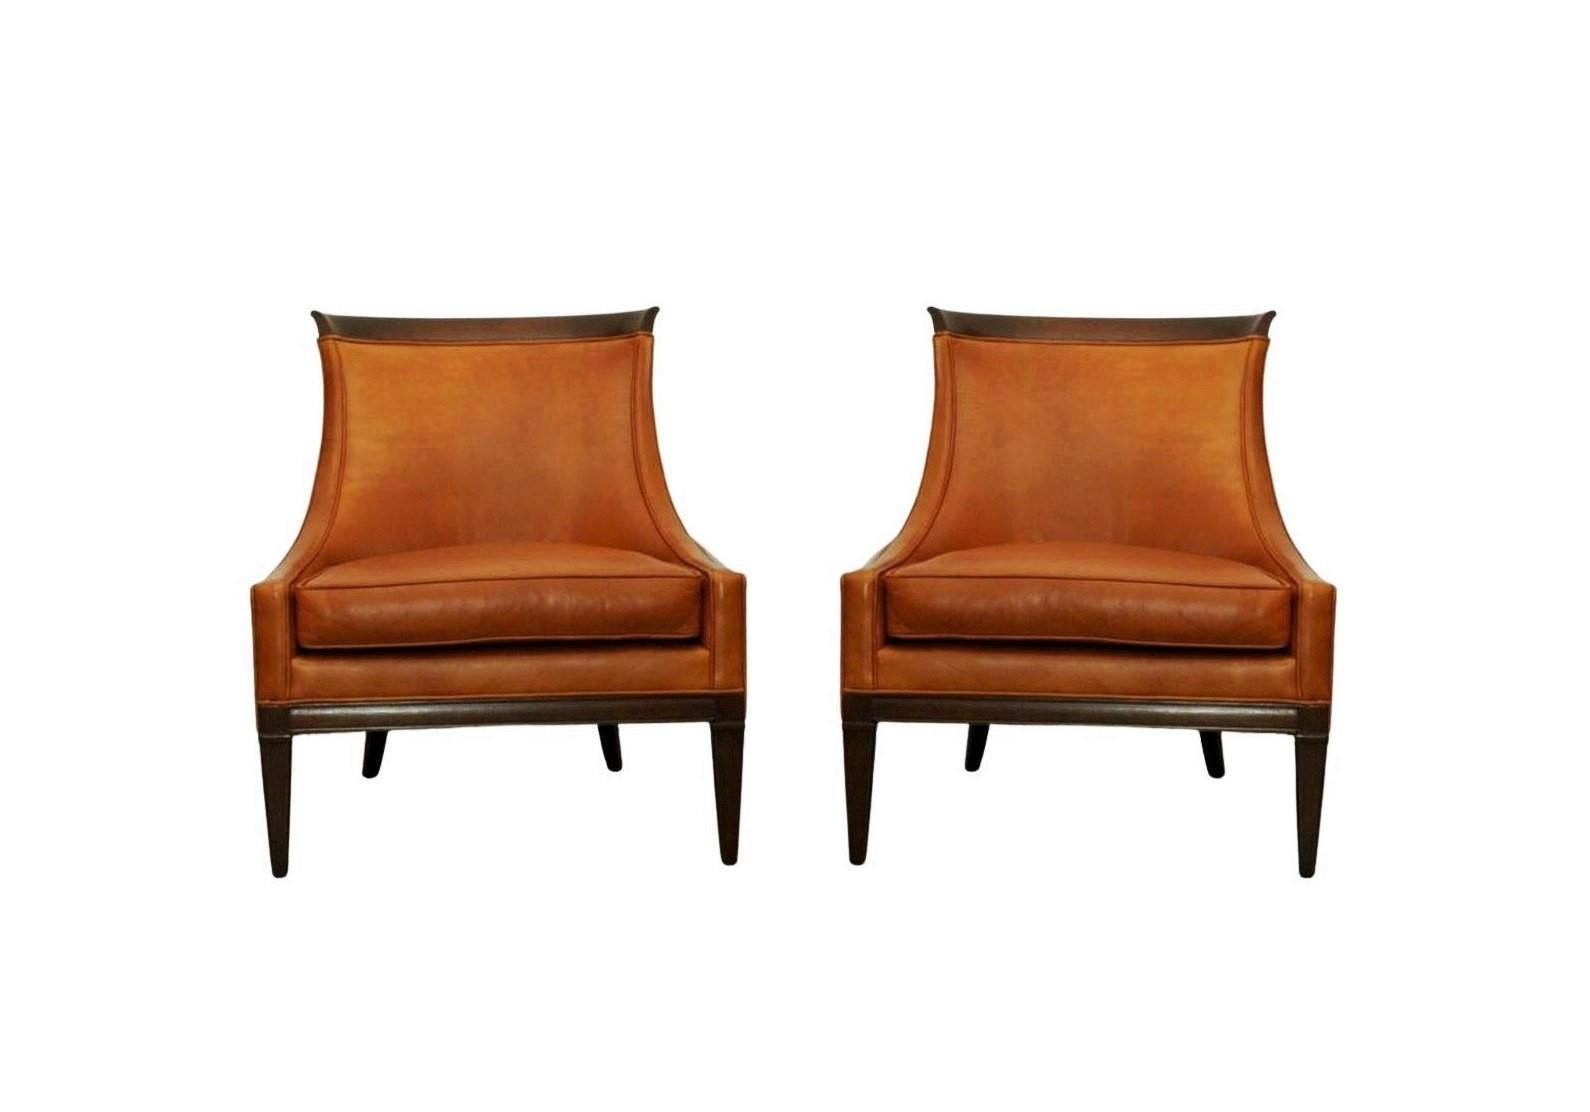 Ein hübsches Paar Pantoffelsessel, ca. 1960er Jahre. Jeder Stuhl wurde mit einem minimalistischen Ansatz entworfen und bietet perfekte Proportionen und Maßstäbe für Leichtigkeit und Komfort. Mit hoher Rückenlehne und armloser Silhouette, mit leicht